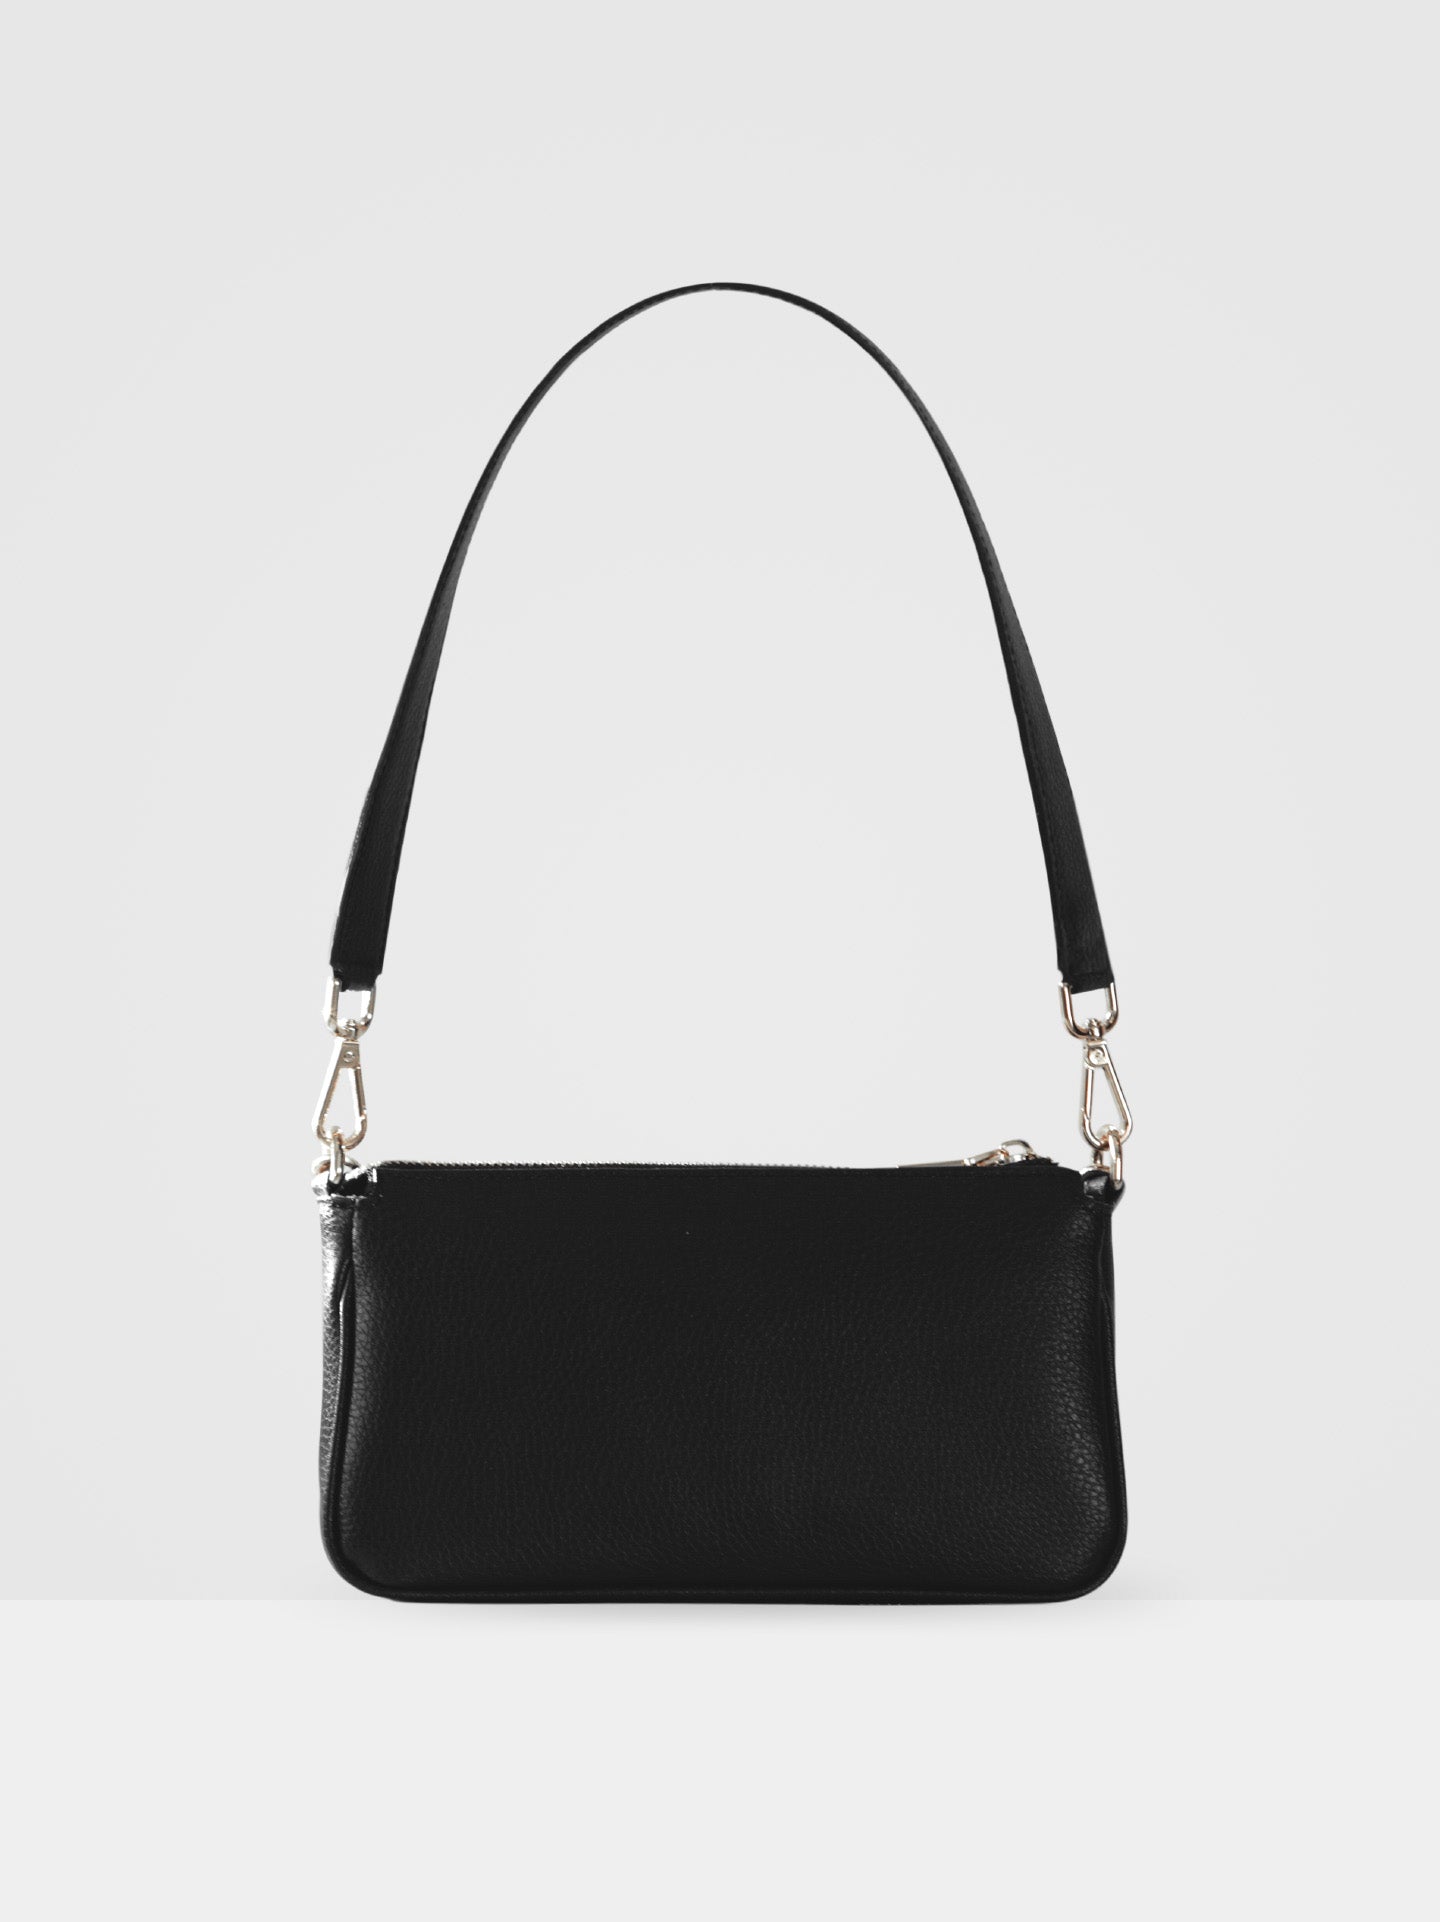 Oscar Baguette Handbag in Black